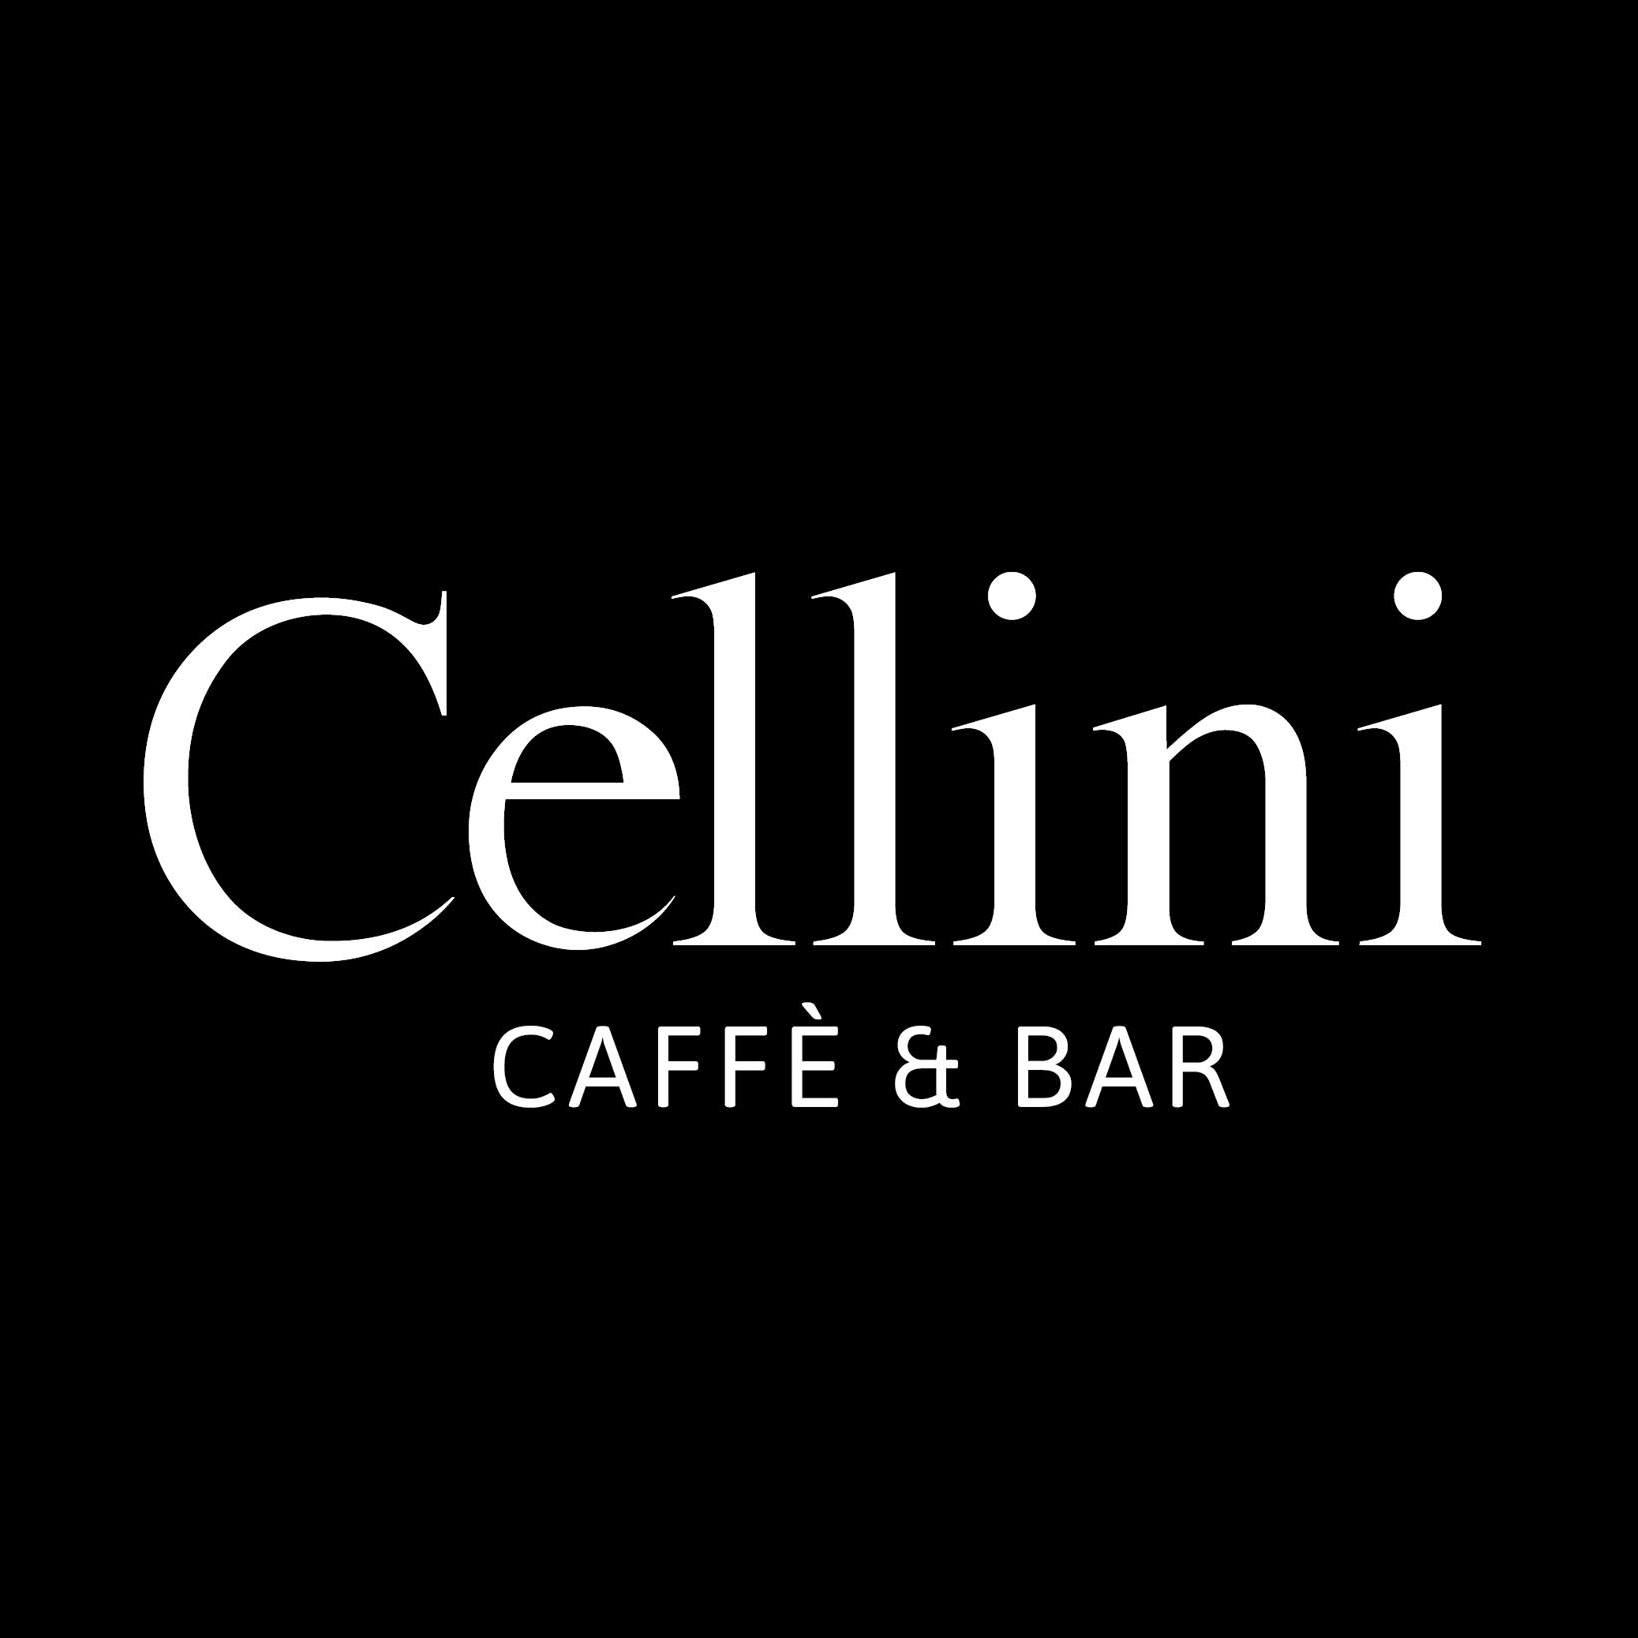 Cellini Caffé & Bar